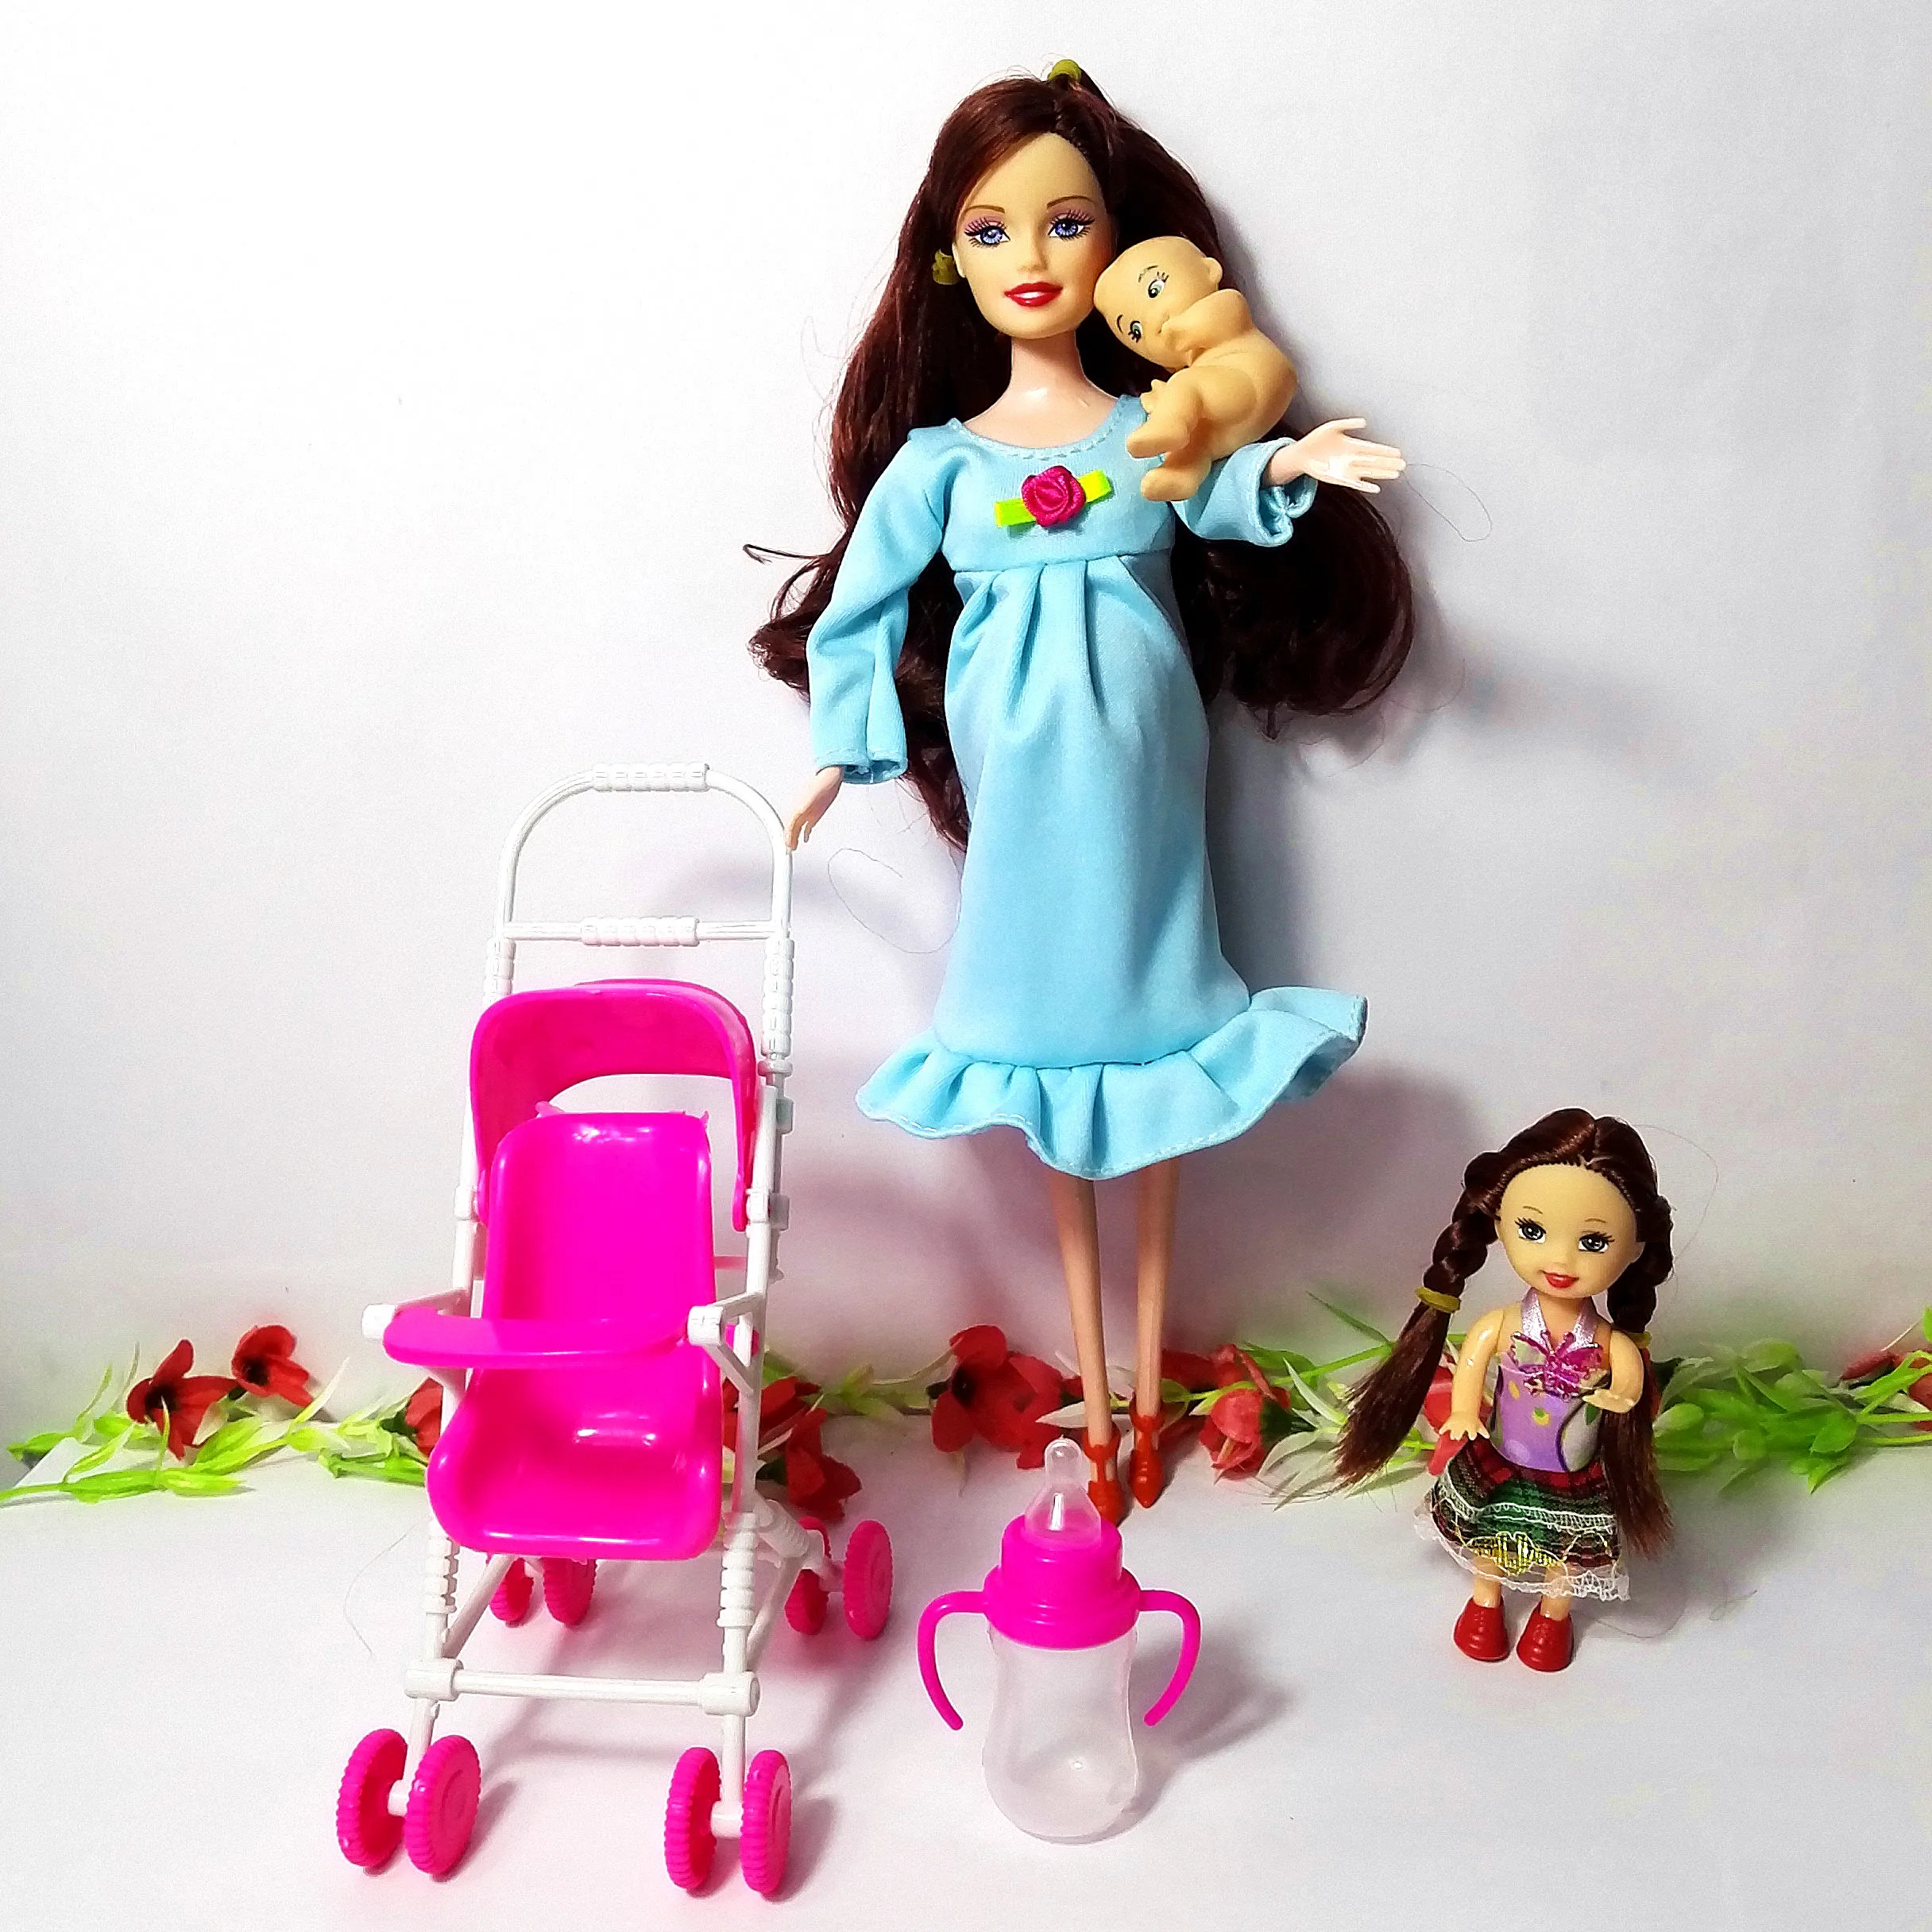 6 человек Семья куклы костюмы мама/папа/сын ребенок/Келли/карета девочки игрушки Мода беременных куклы детские игрушки подарок на день рождения кукла